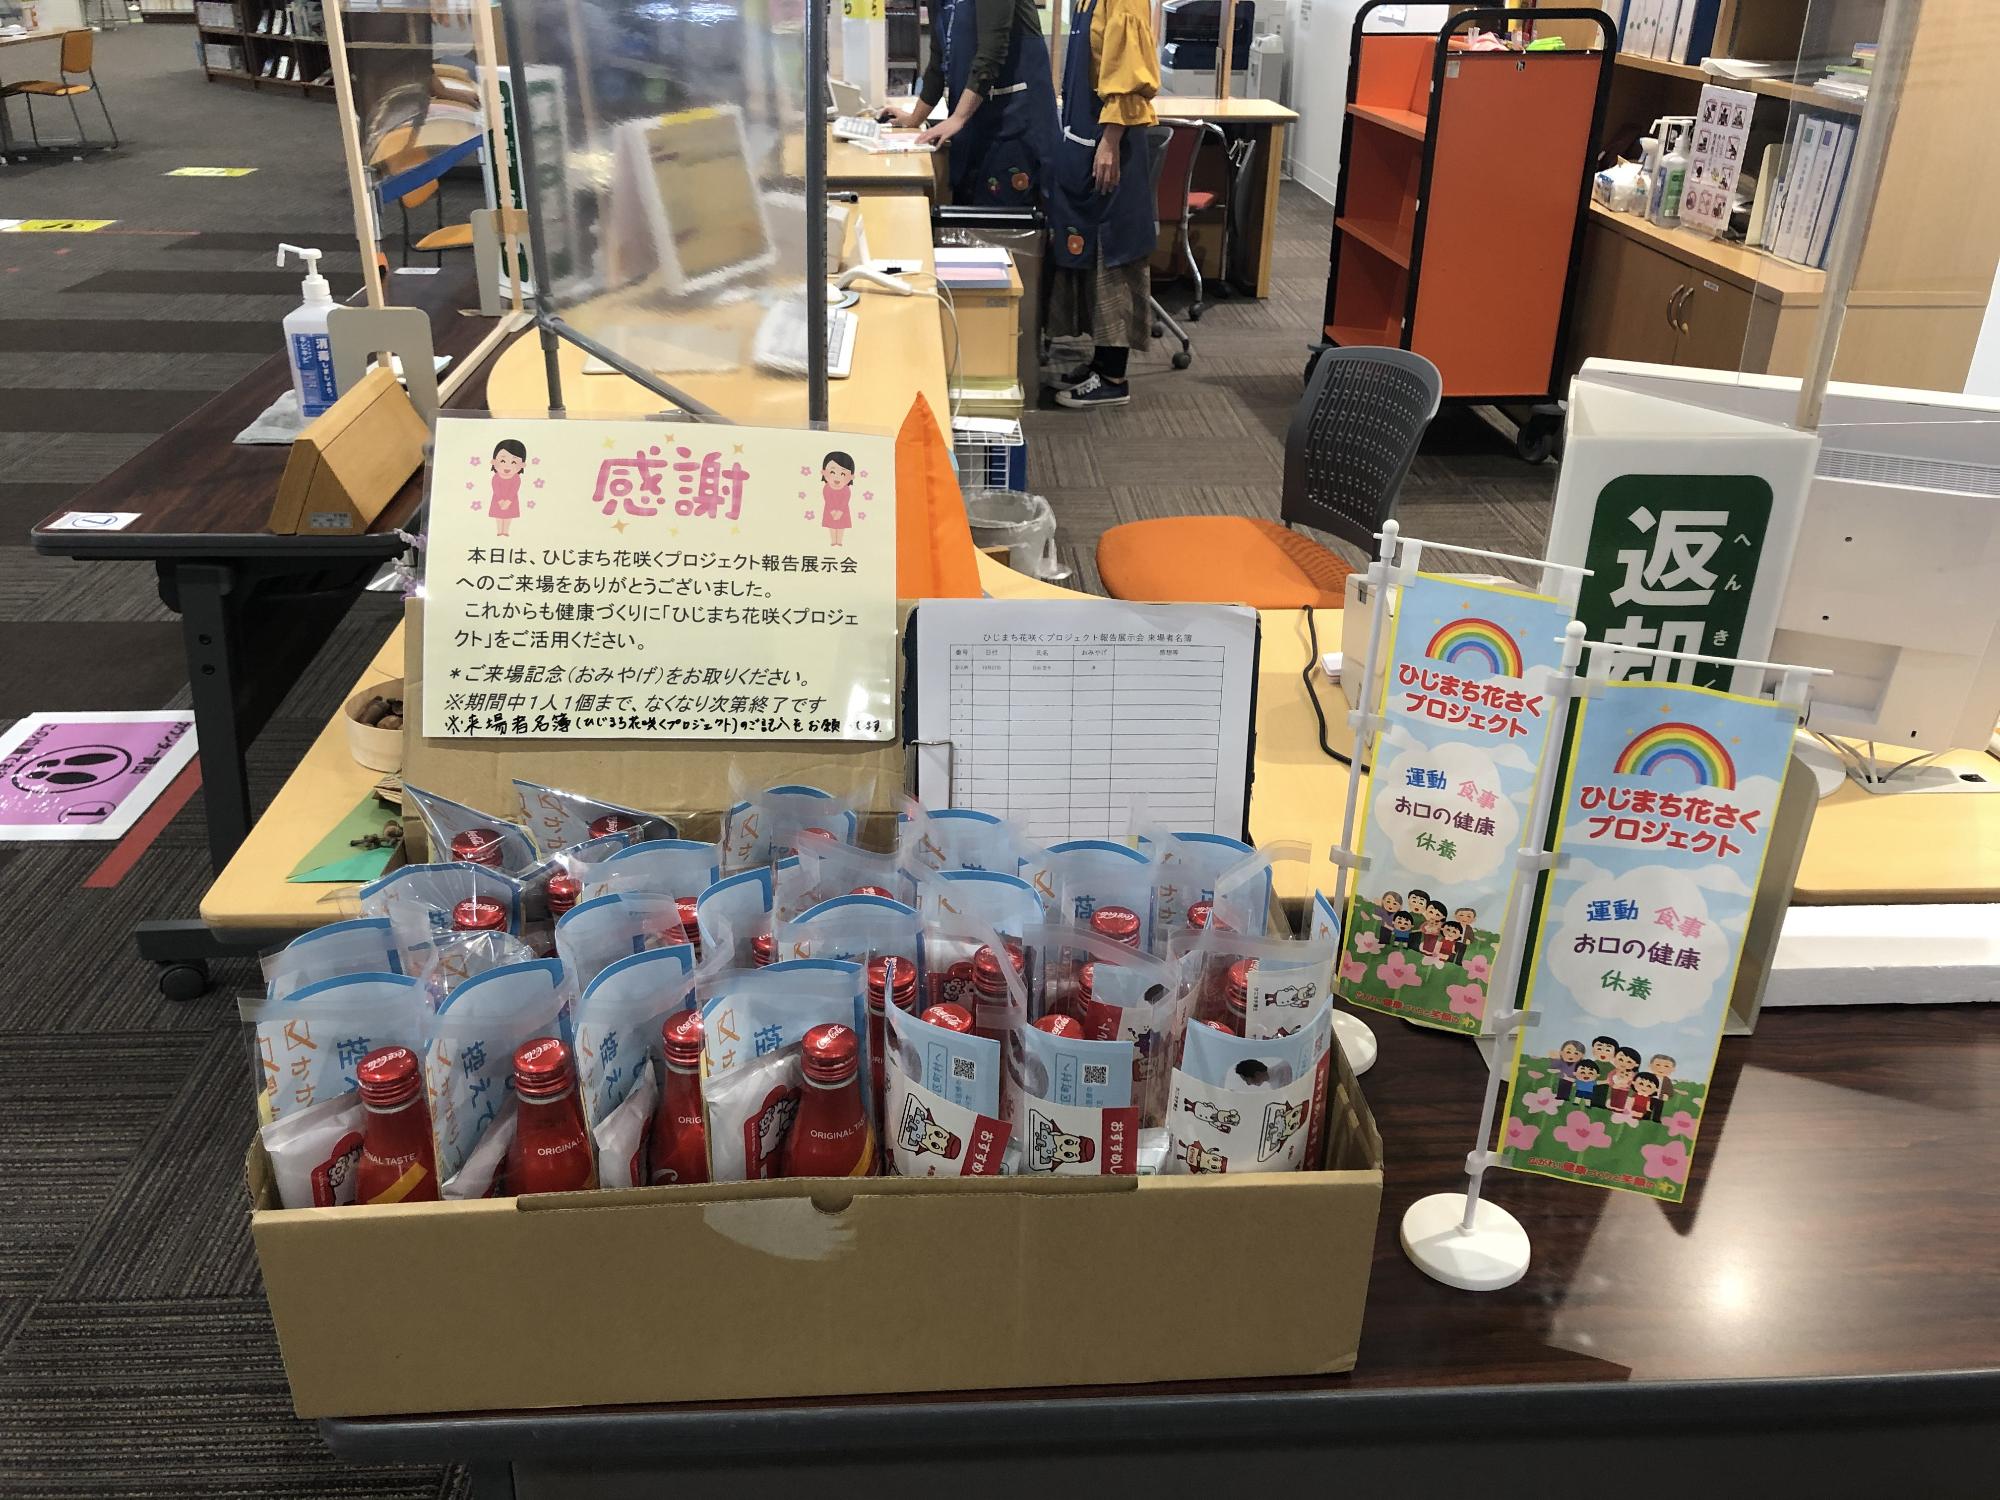 出口の机の上にひじまち花咲くプロジェクトの小さな旗やお土産などが置かれている写真